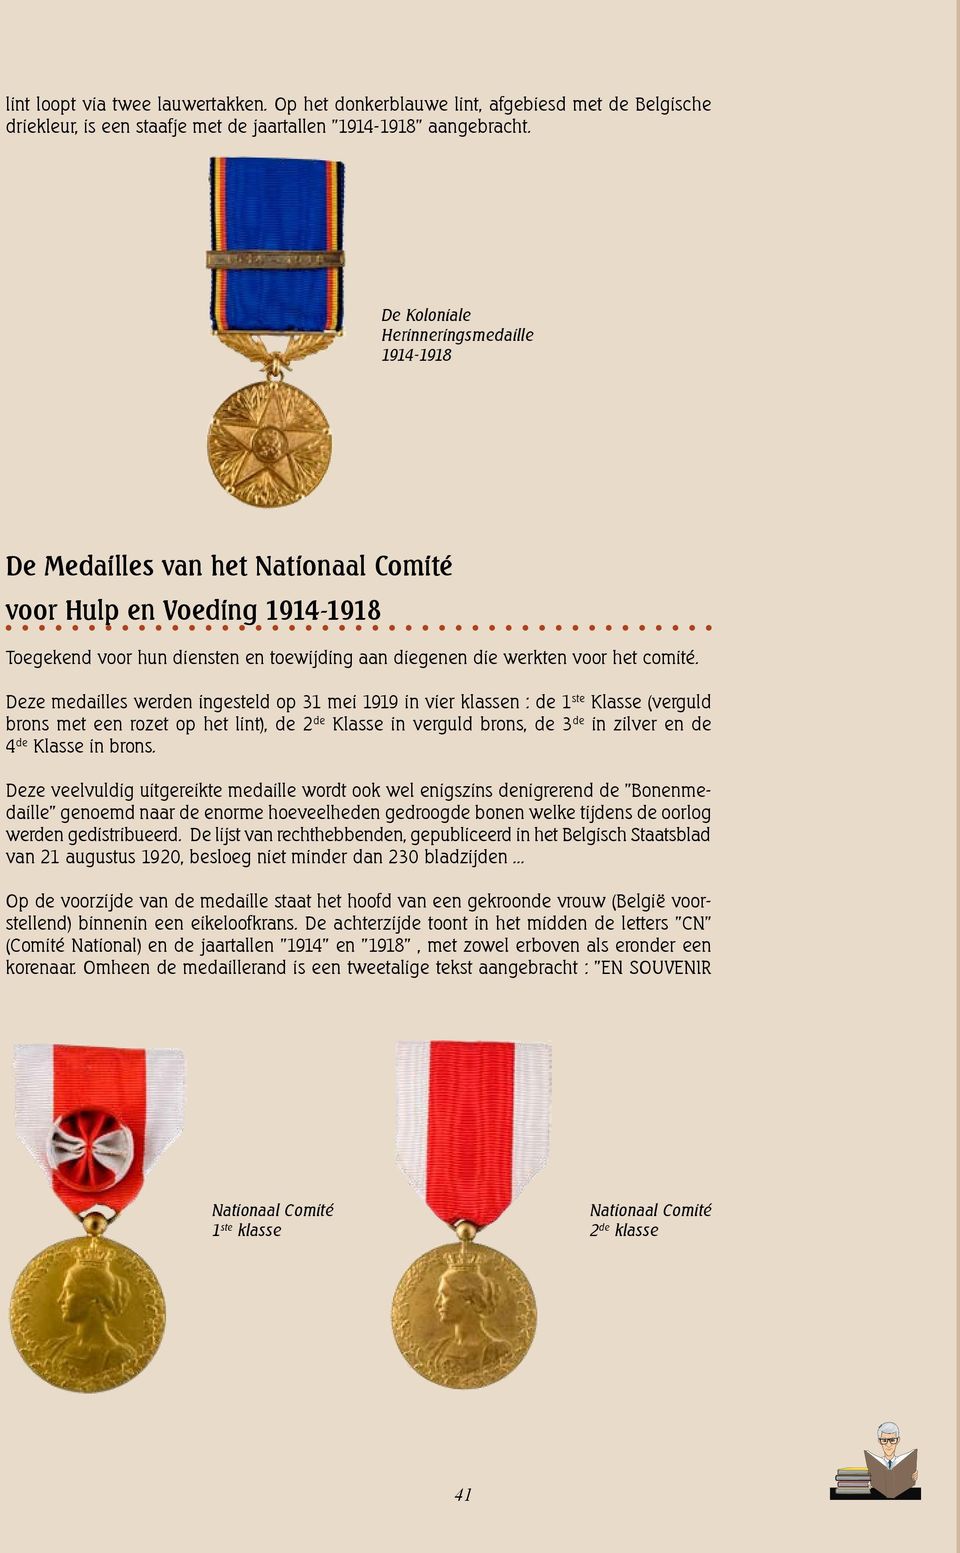 Deze medailles werden ingesteld op 31 mei 1919 in vier klassen : de 1 ste Klasse (verguld brons met een rozet op het lint), de 2 de Klasse in verguld brons, de 3 de in zilver en de 4 de Klasse in